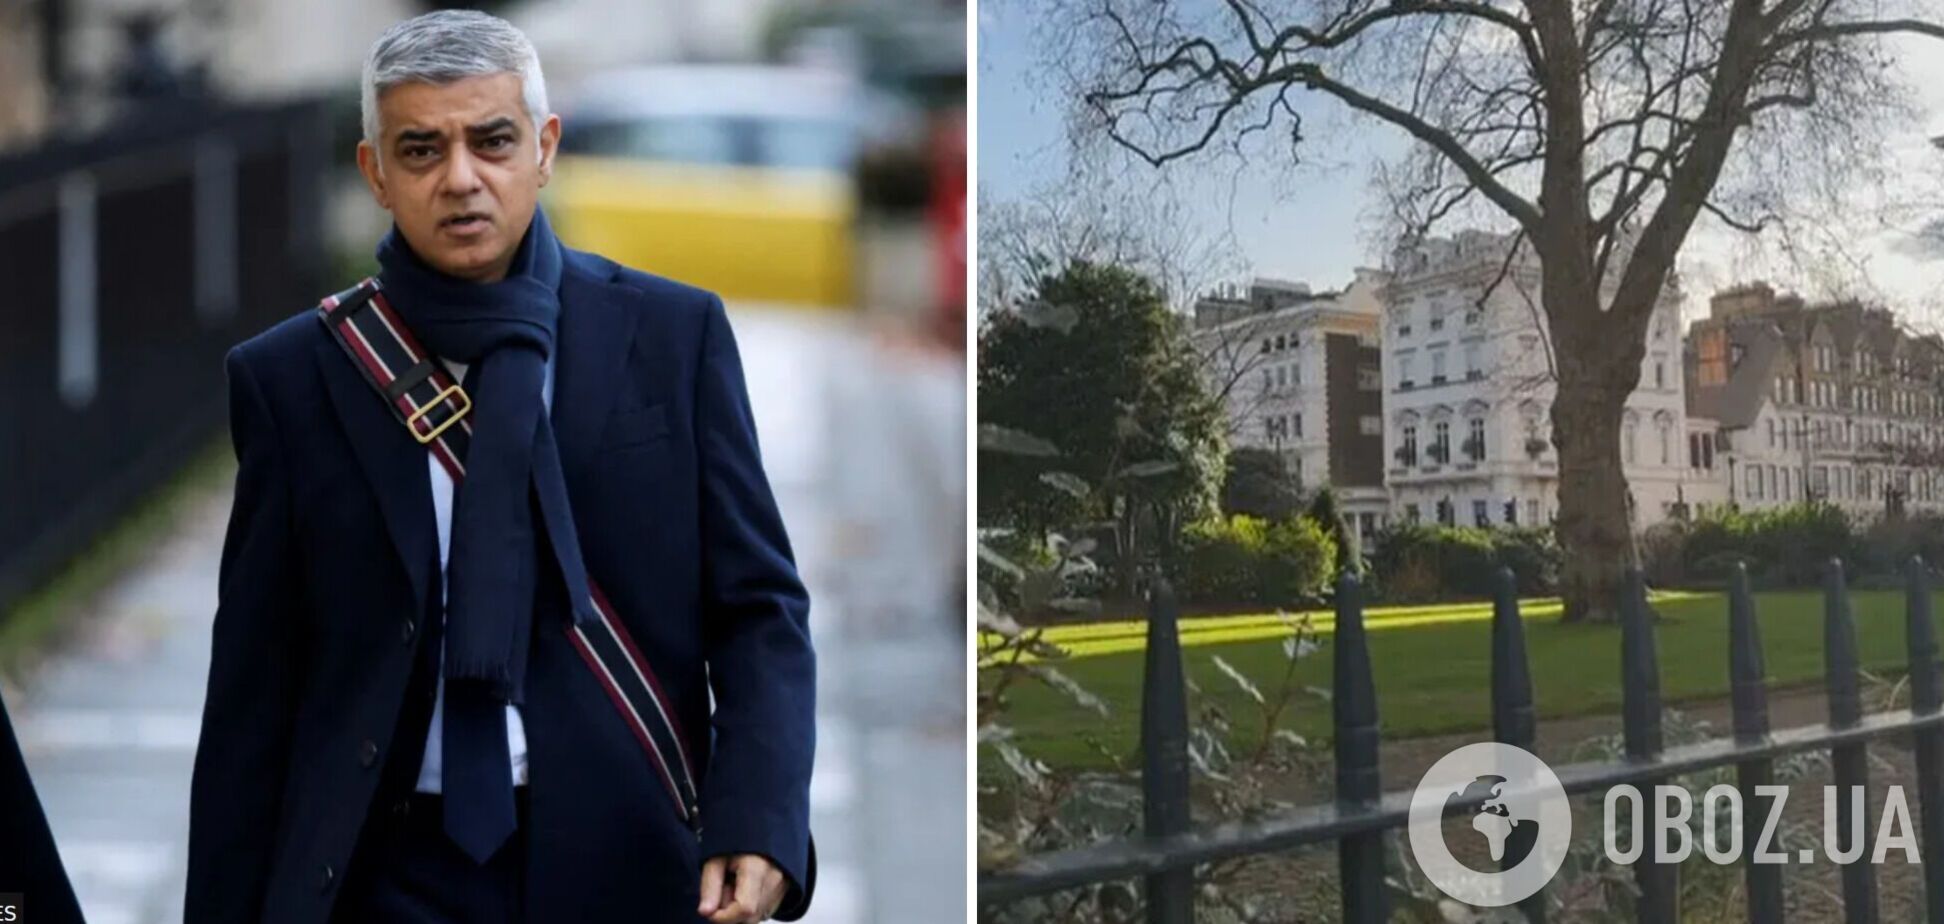 Мэр Лондона призвал конфисковать дома друзей Путина и помочь с жильем украинцам